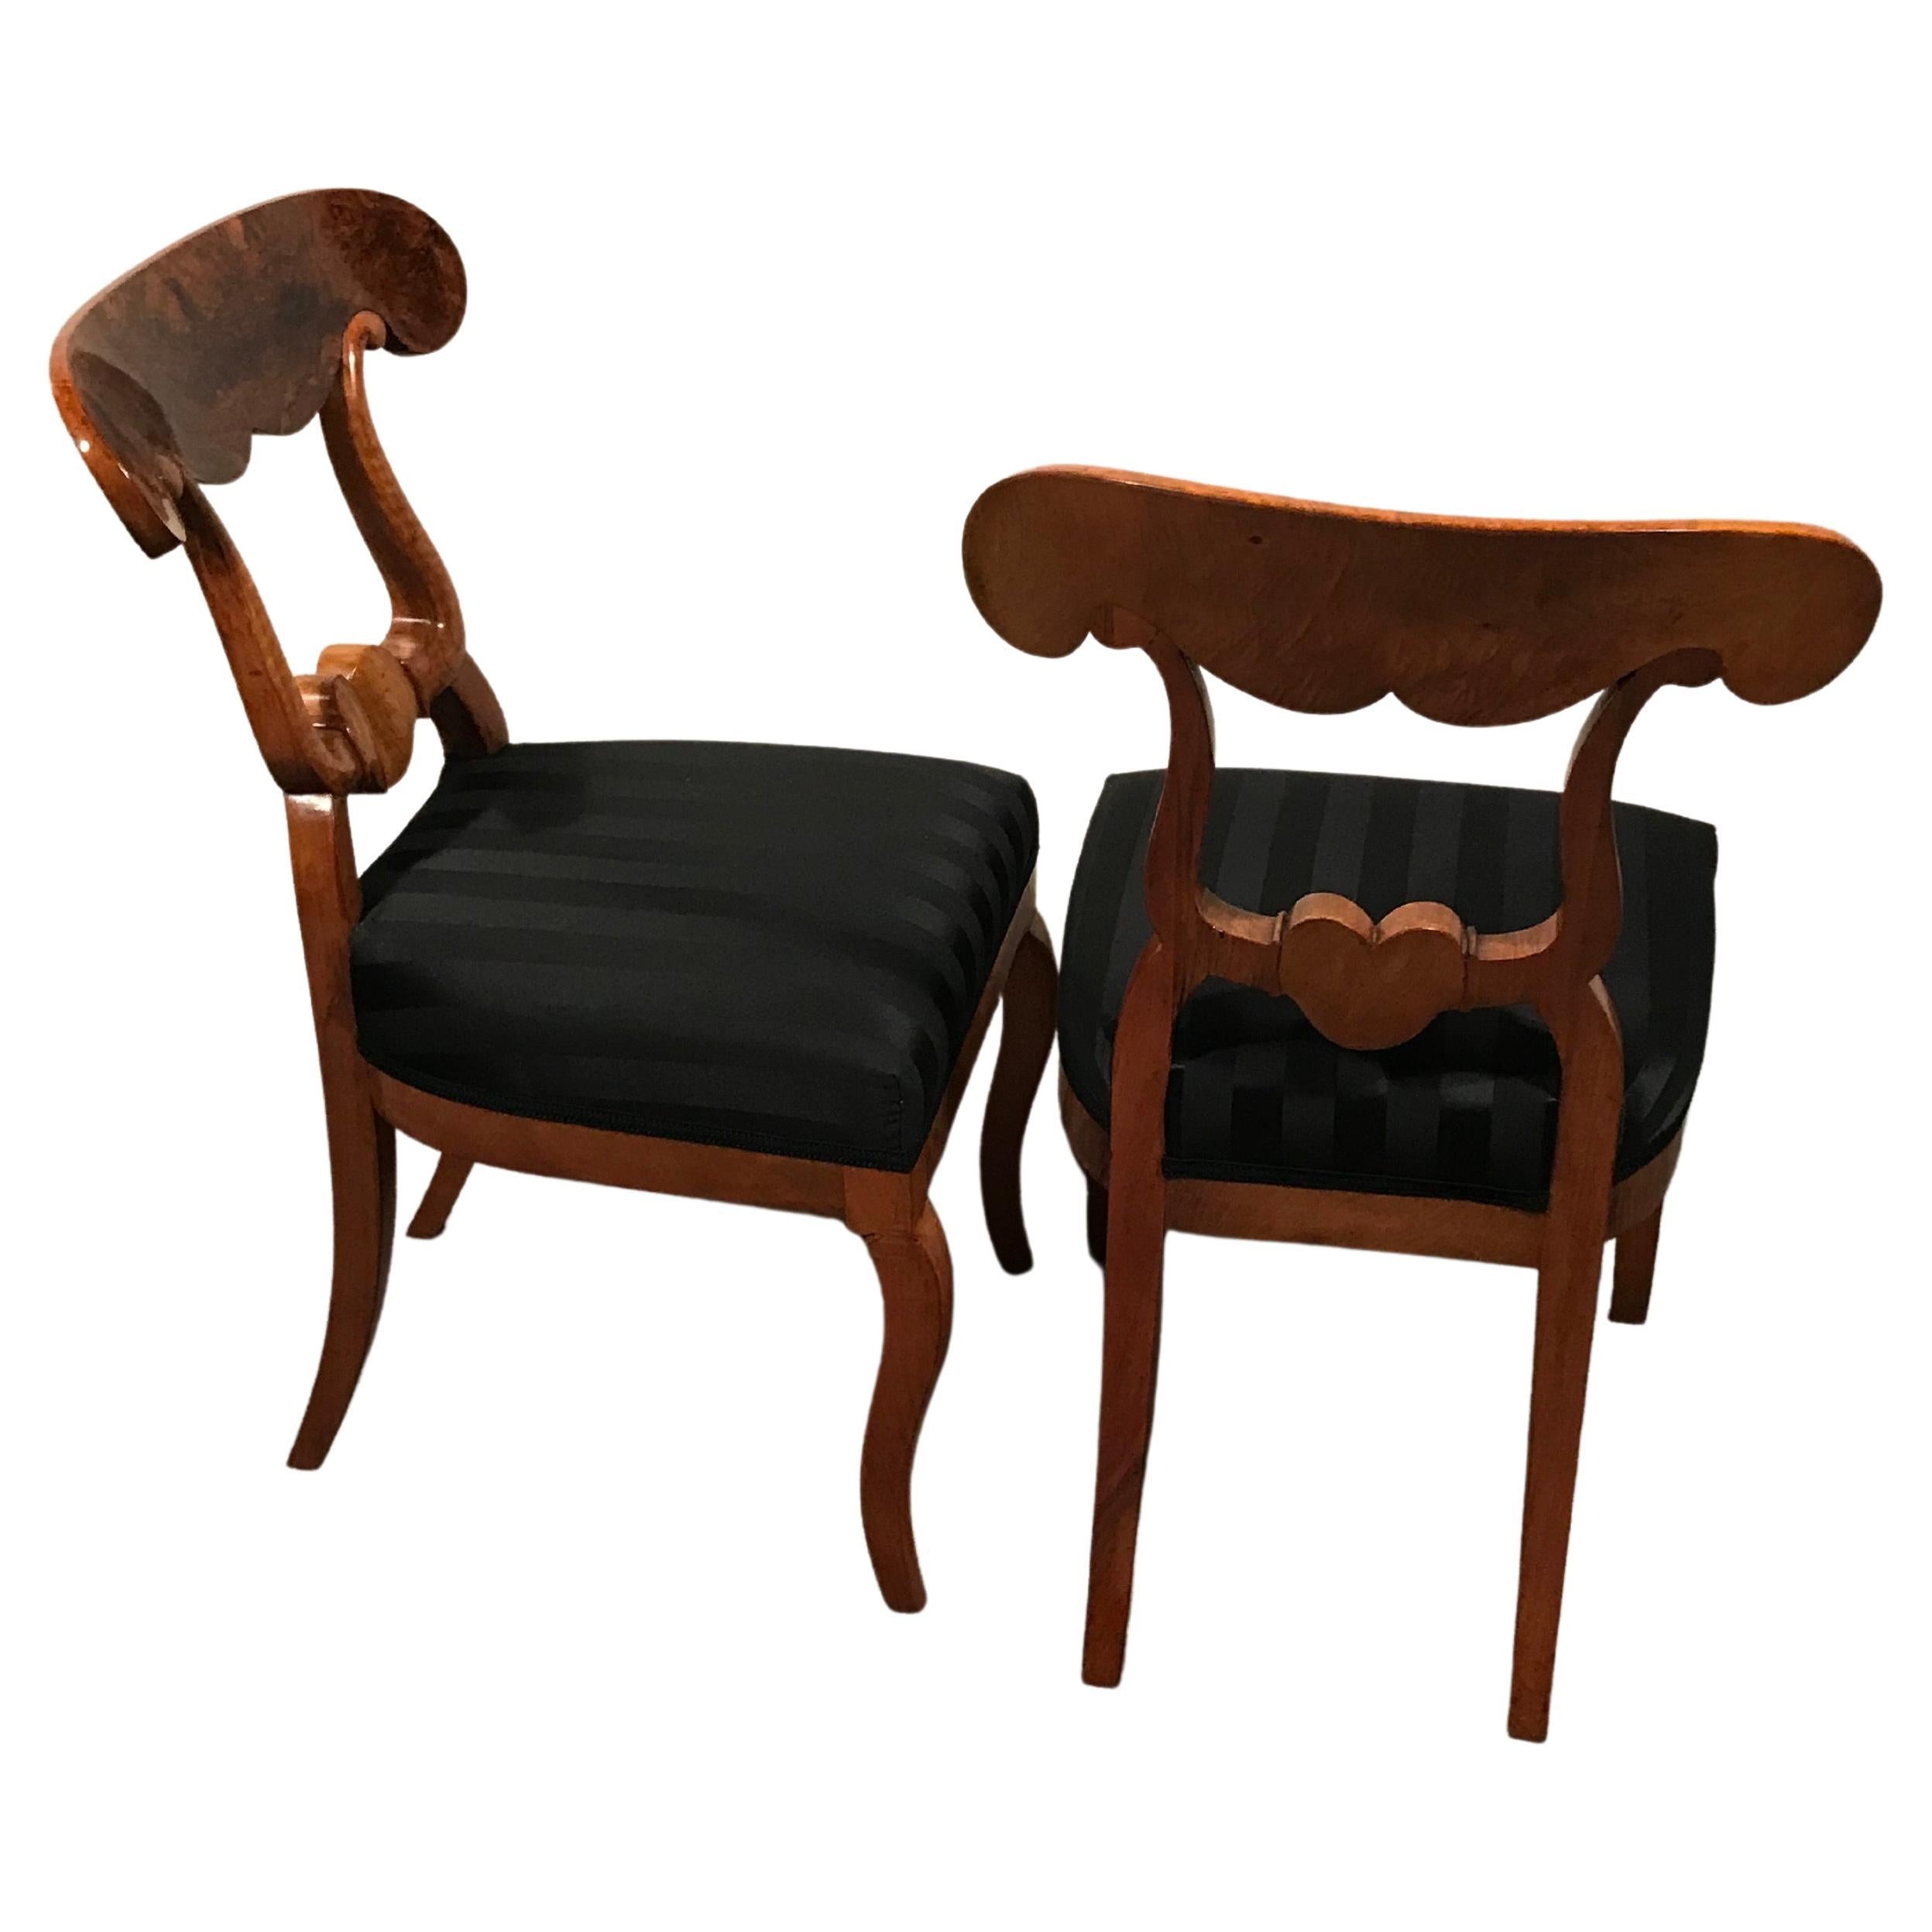 Dieser exquisite Satz von 4 originalen Biedermeier-Stühlen ist ein seltener Fund. 
Die so genannten Original Biedermeier Ochsenkopf-Stühle haben ihren Namen von ihrer schön gestalteten Rückenlehne. Sie stammen aus der Zeit um 1820 und kommen aus